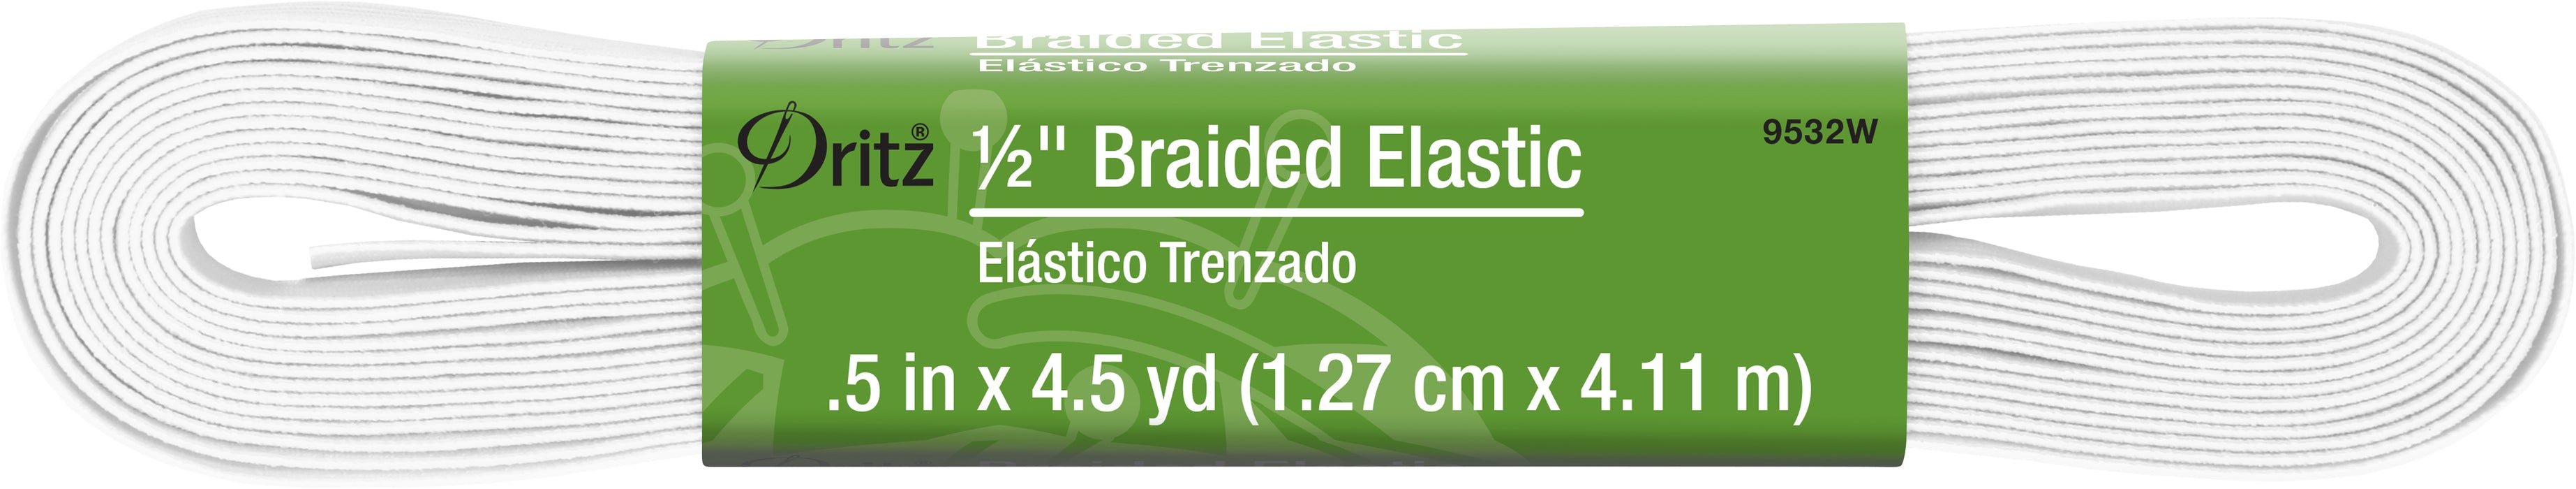 1/2" White Braided Elastic, 4-1/2 yd